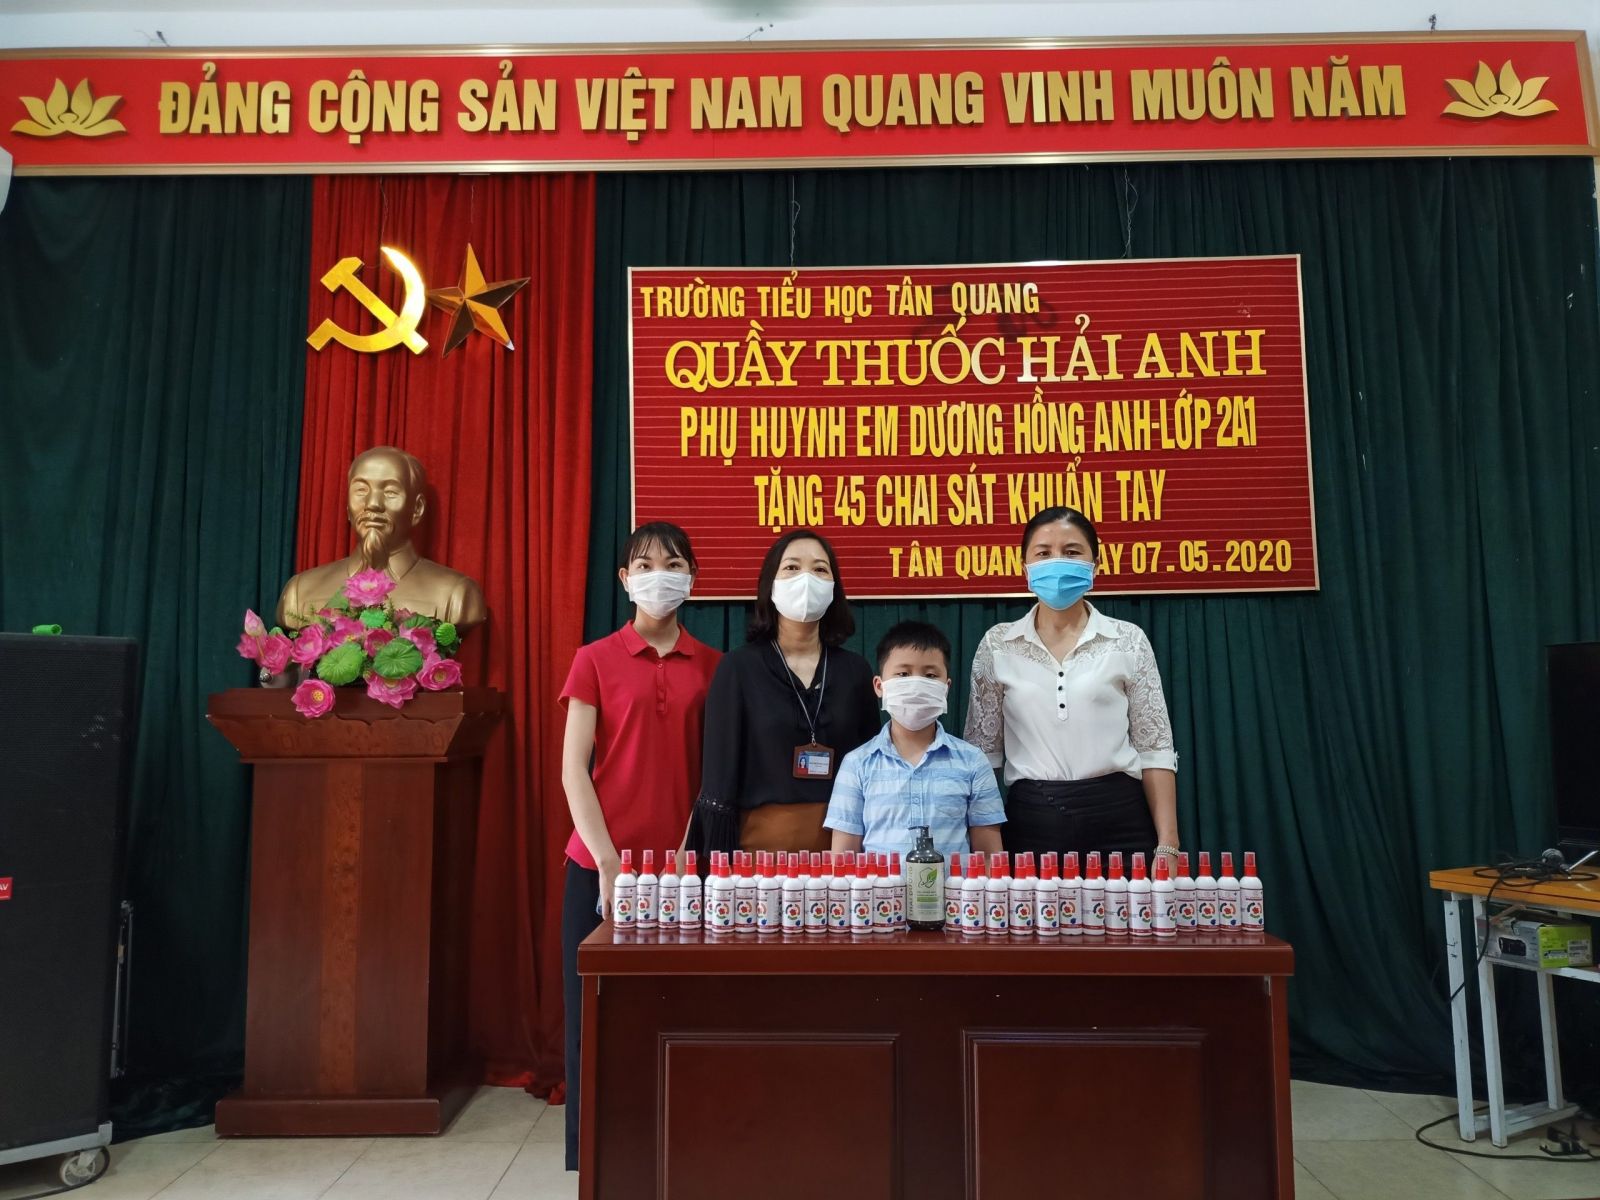 Quầy thuốc Hải Anh-Phụ huynh em Dương Hồng Anh lớp 2A1 tặng trường ...